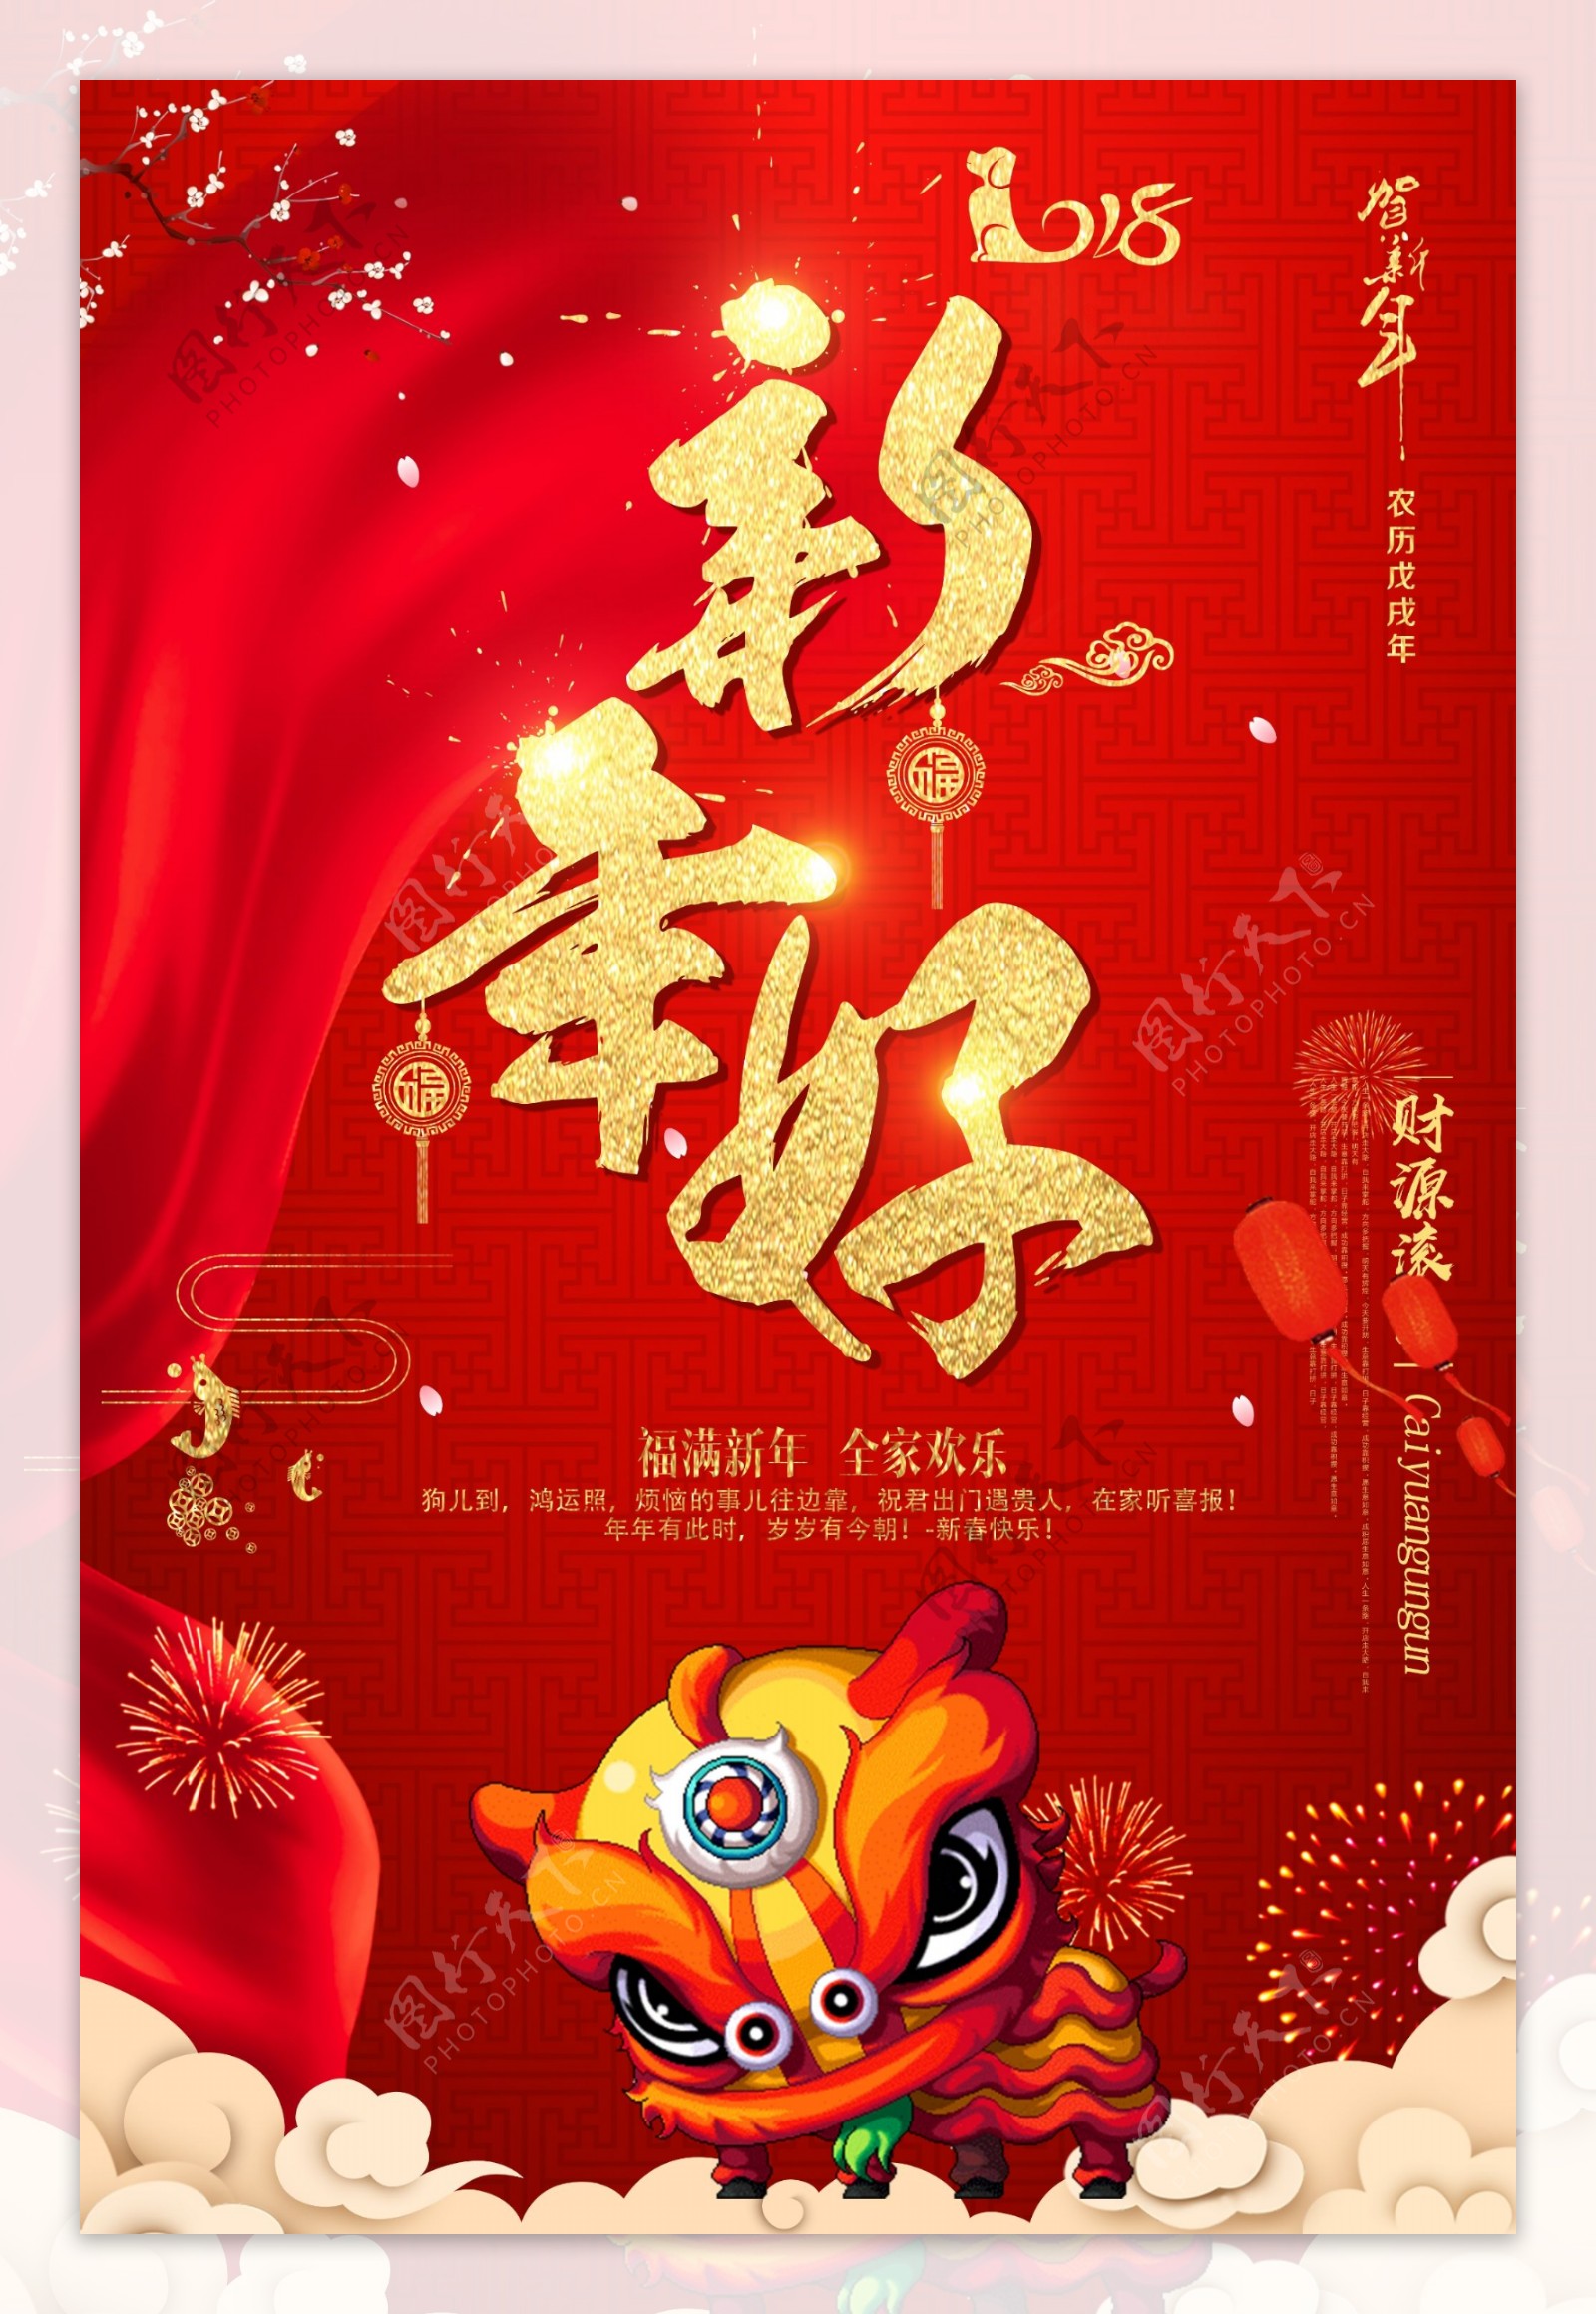 中国风贺新年海报设计